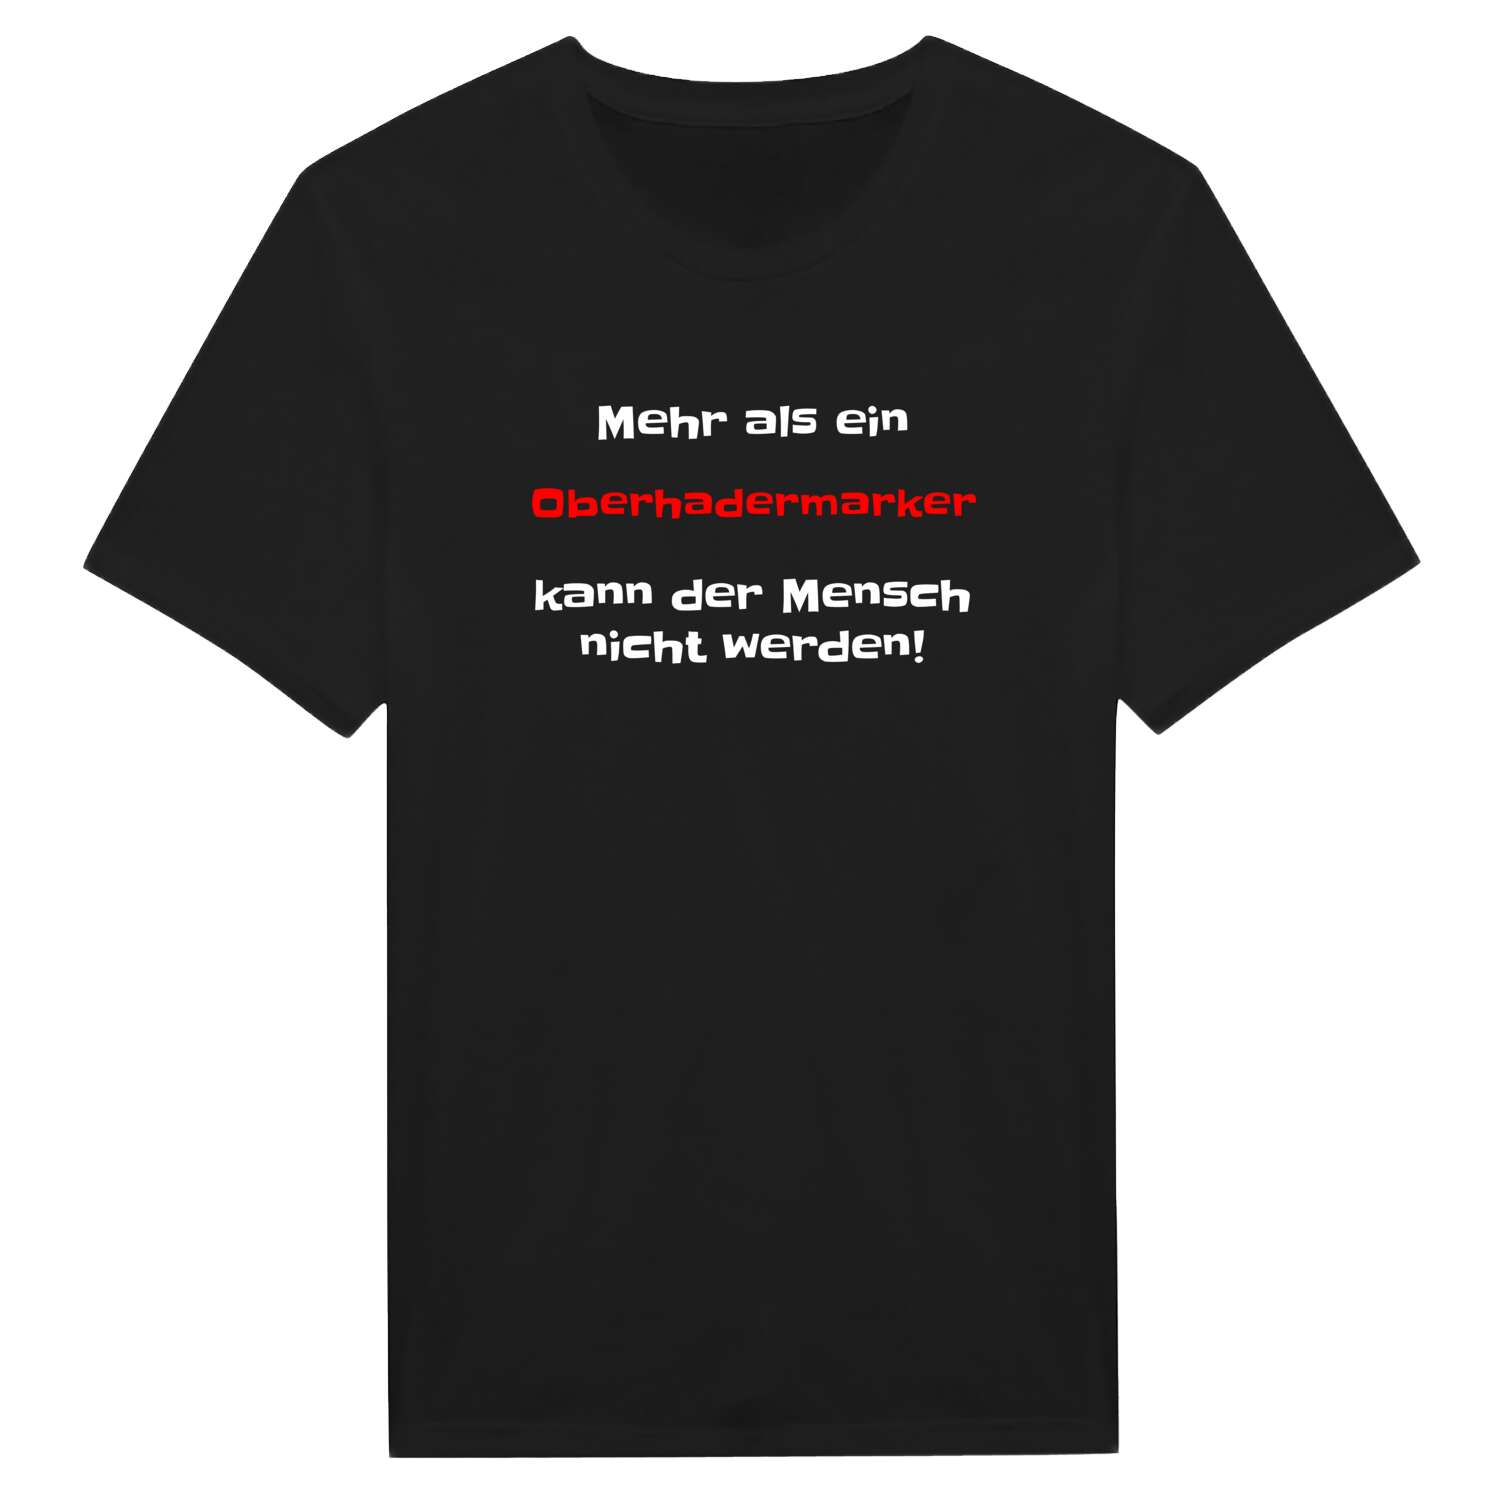 Oberhadermark T-Shirt »Mehr als ein«